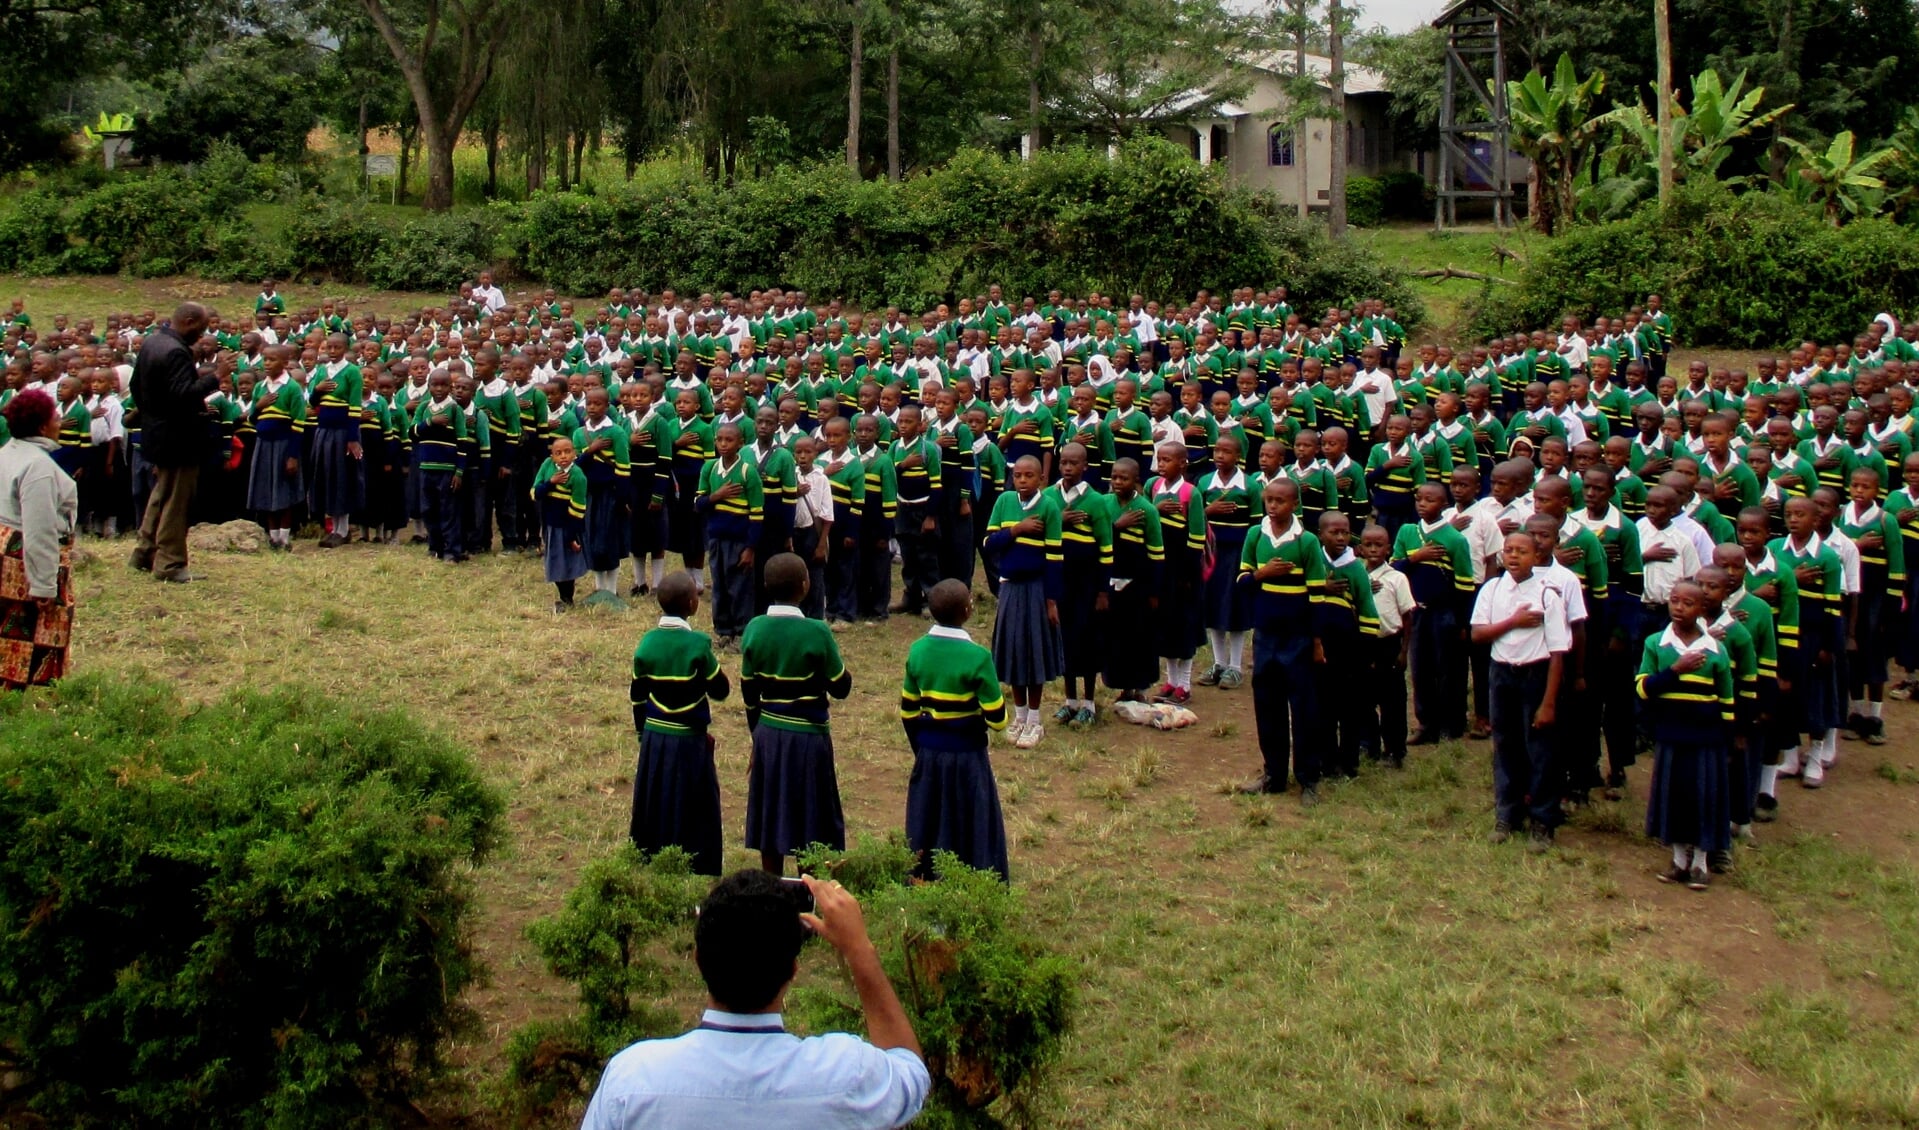 Bij een primary school in Tanzania is gedoneerd voor de aanschaf van schooluniformen